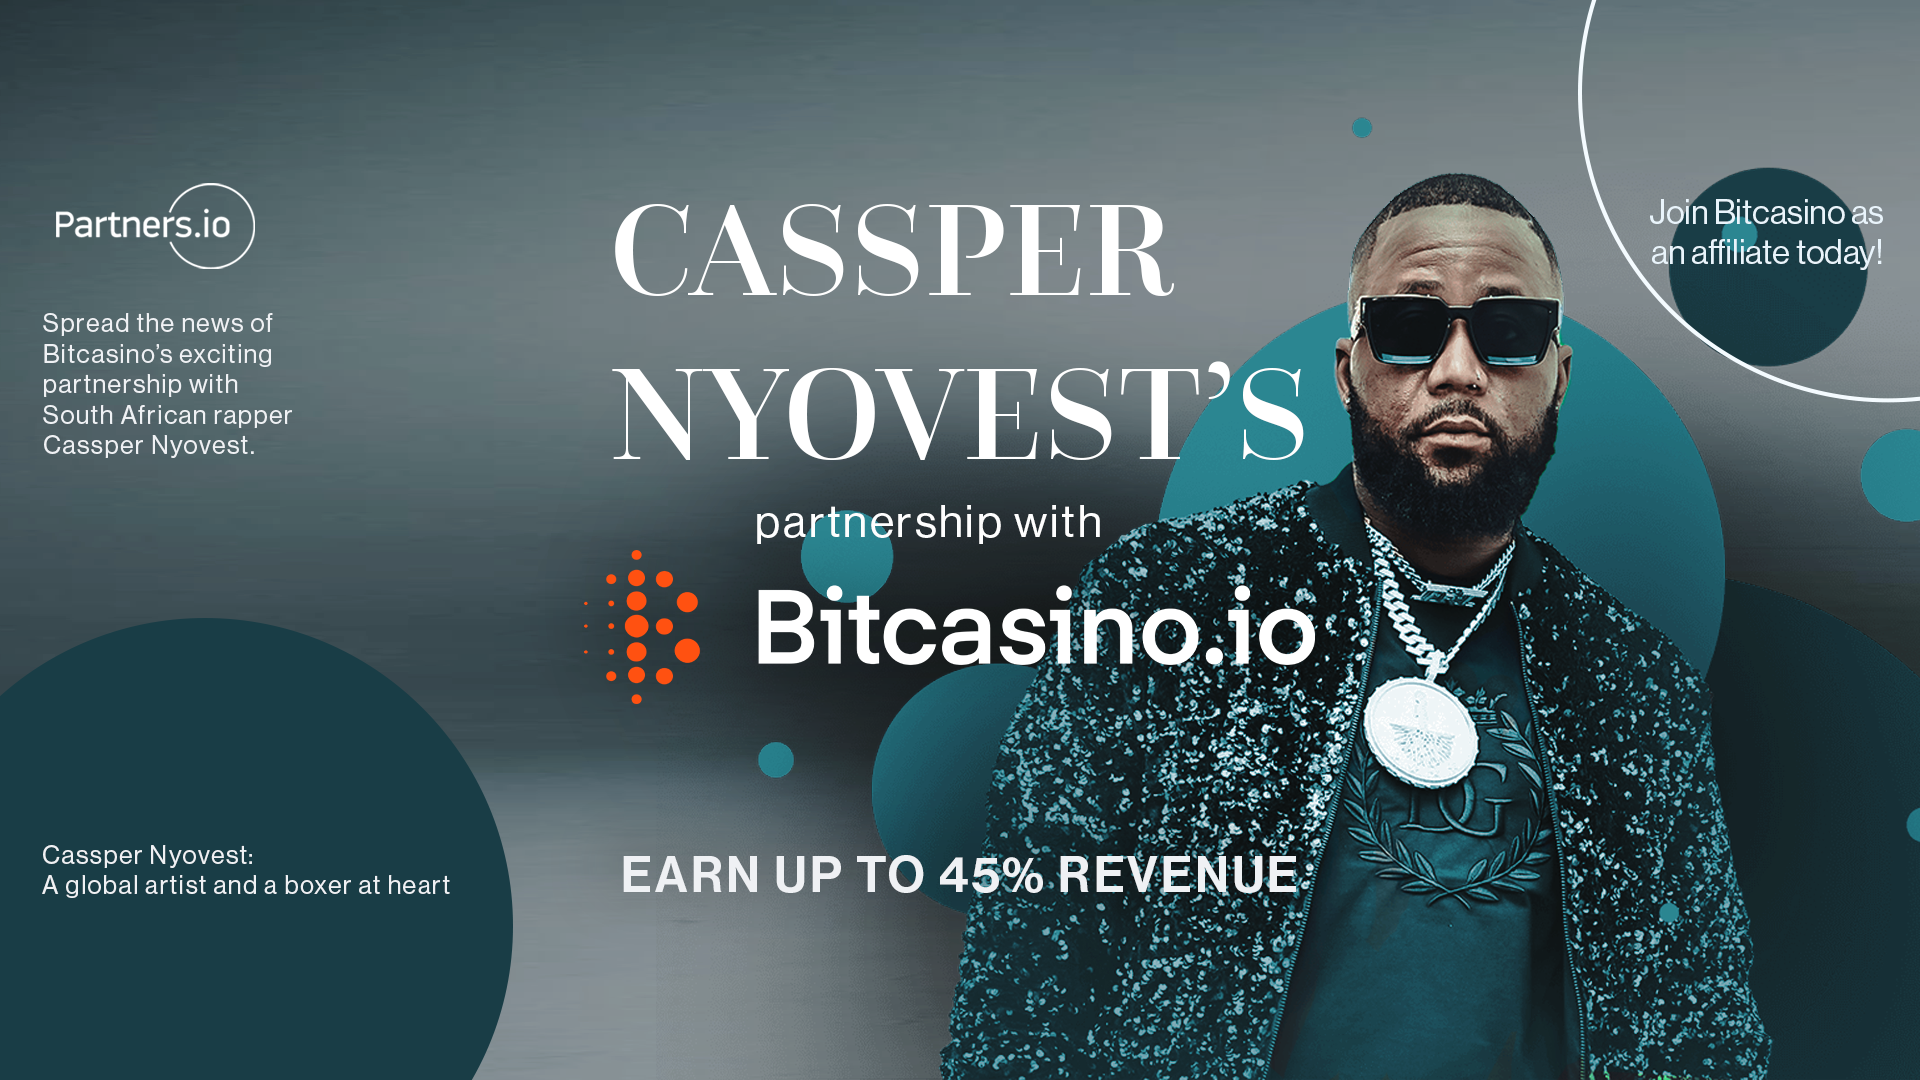 Cassper Nyovest’s partnership with Bitcasino